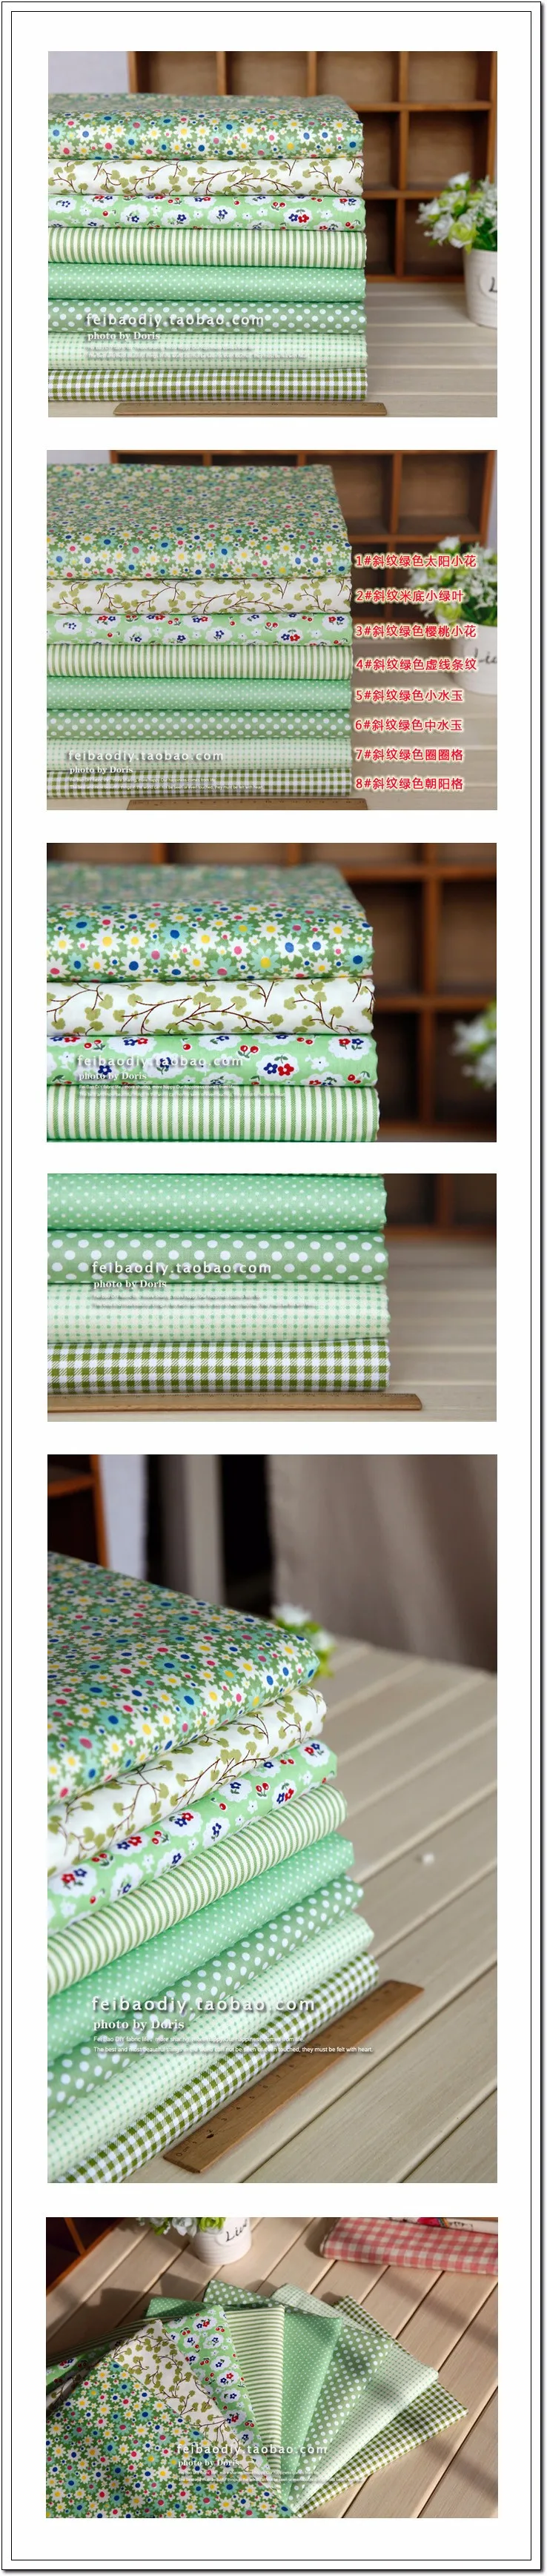 Зеленый 8 Ассорти предварительно нарезанный саржа хлопок качественное одеяло ткань для вышивания кукол ткани связка Шарм Вышивание ручной